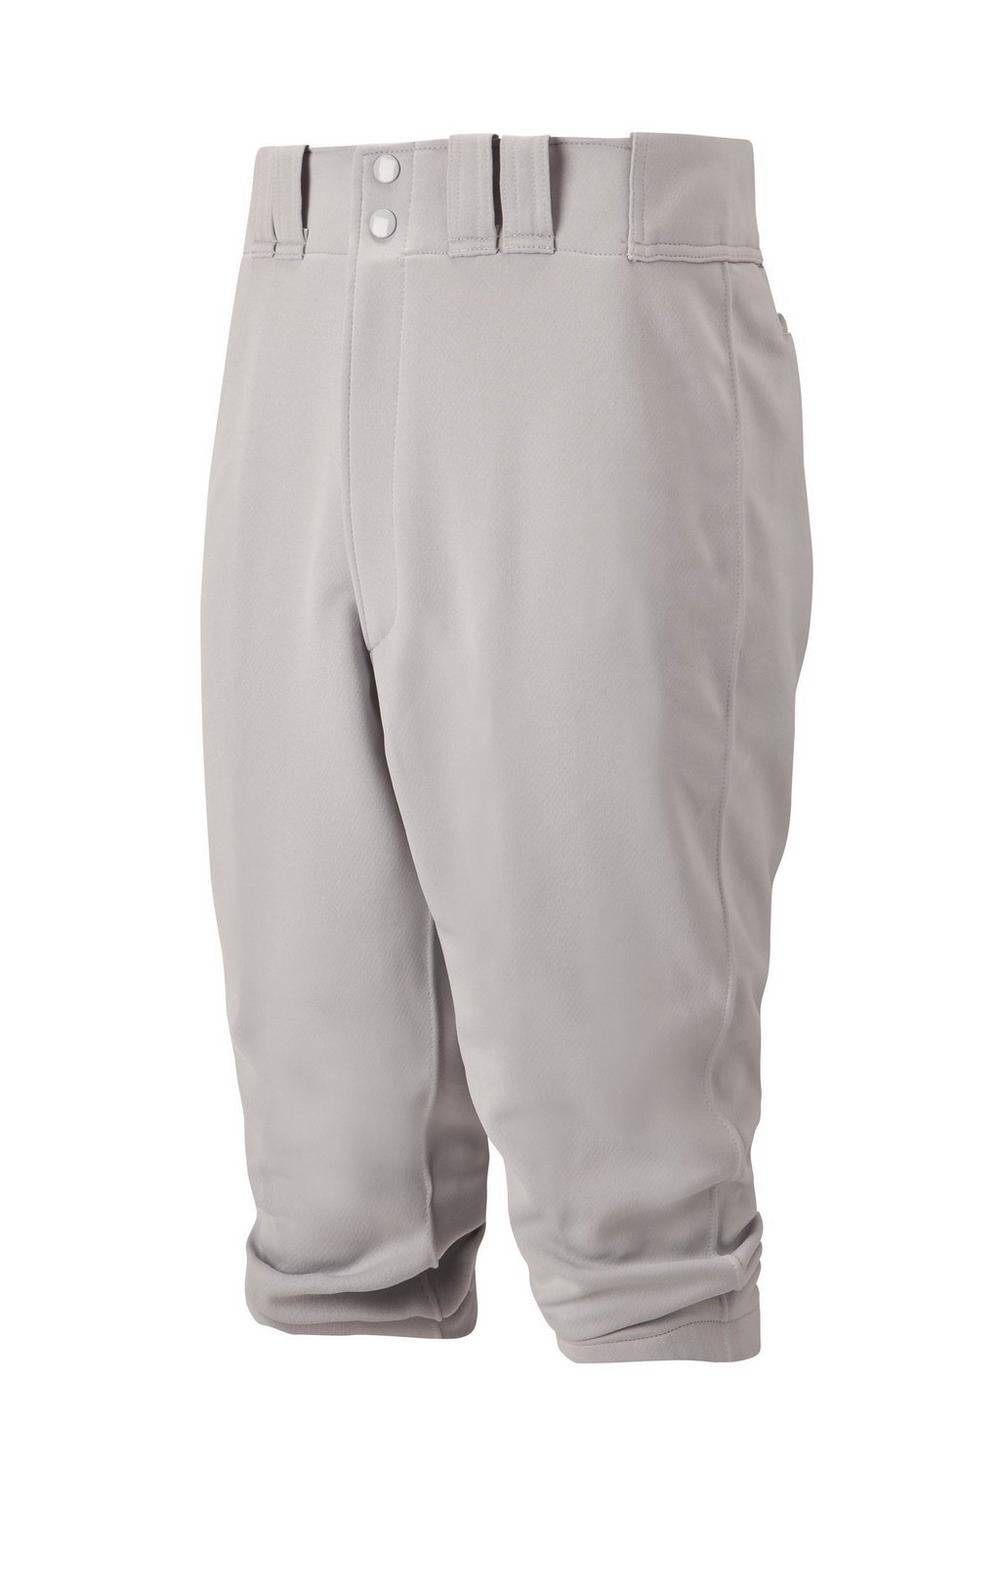 Mizuno Premier Adult Short Pant - Grey (350280)